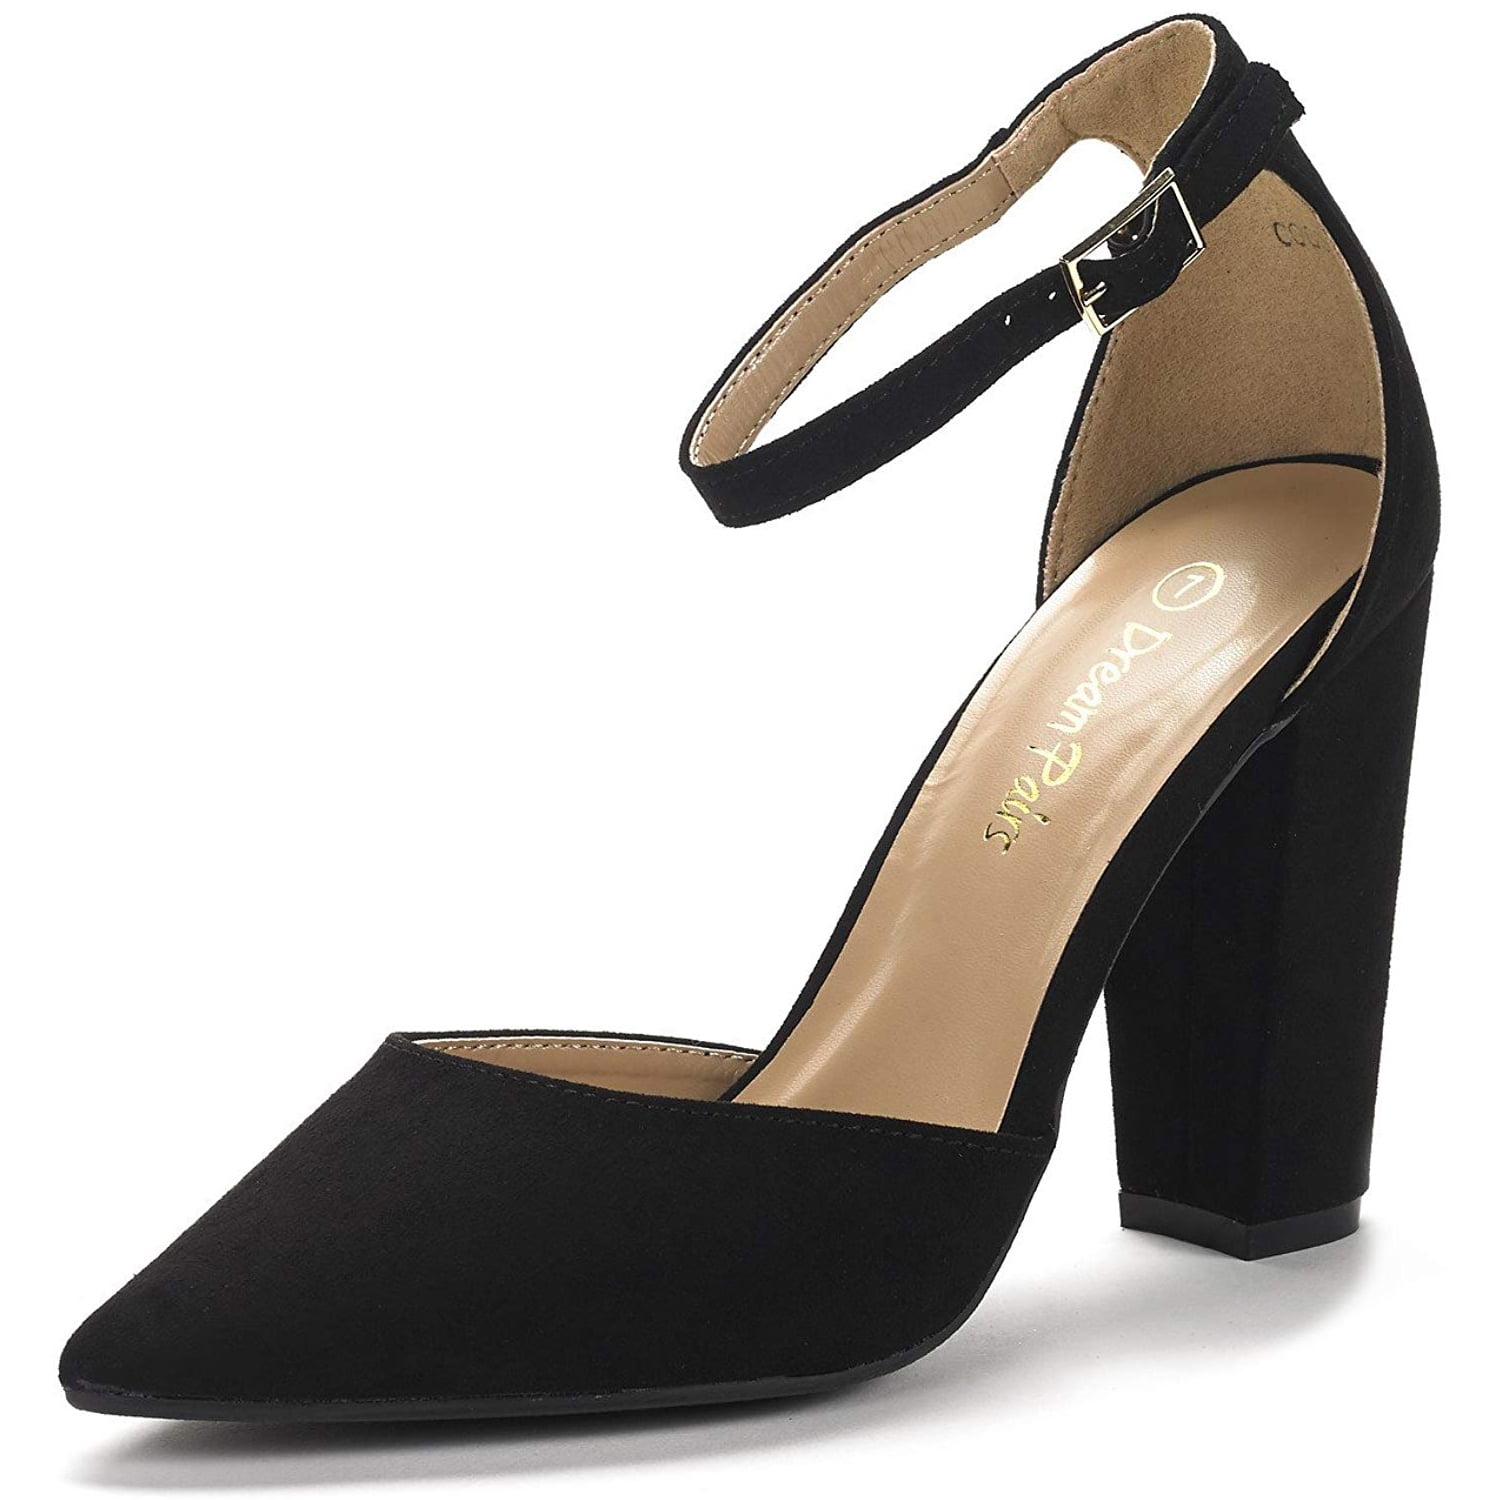 black dress shoes size 9